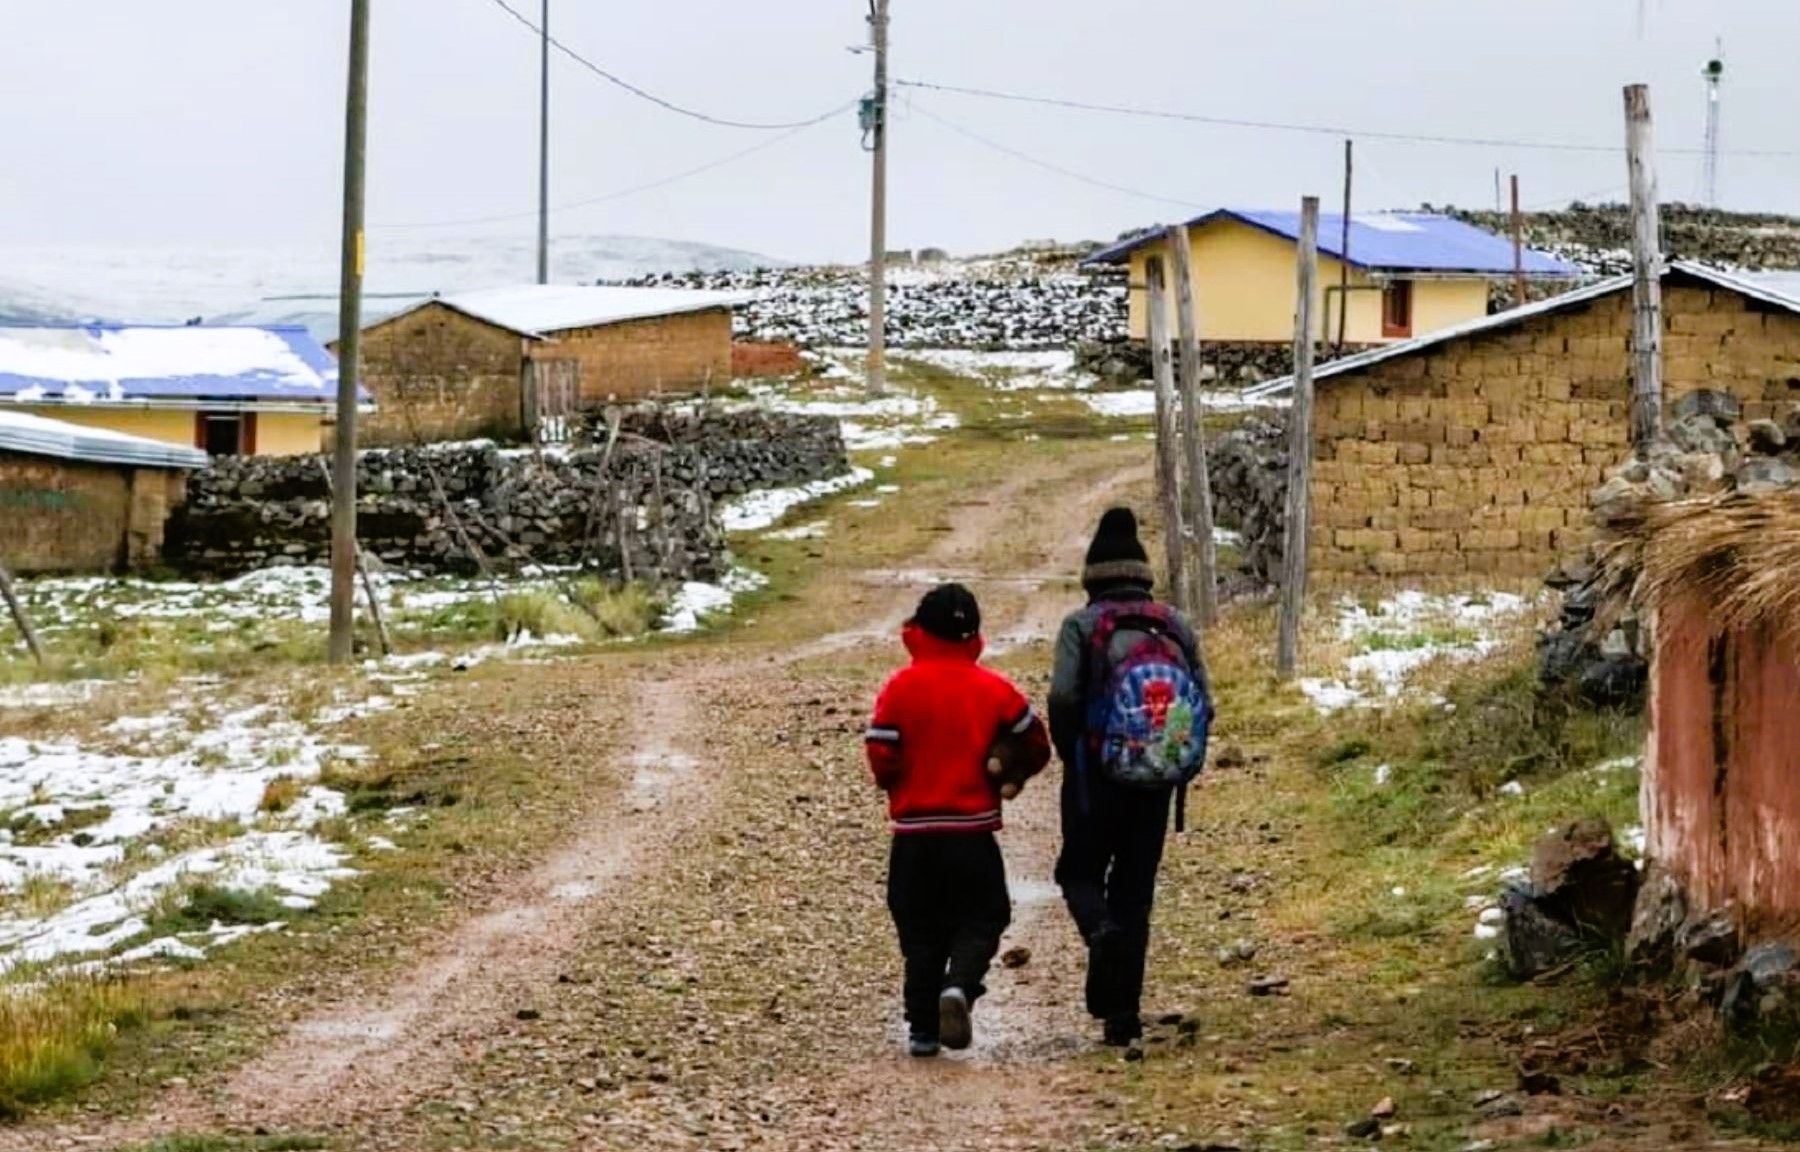 Gerencia Regional de Educación del Cusco dispuso el retraso del horario de ingreso de los escolares debido a bajas temperaturas